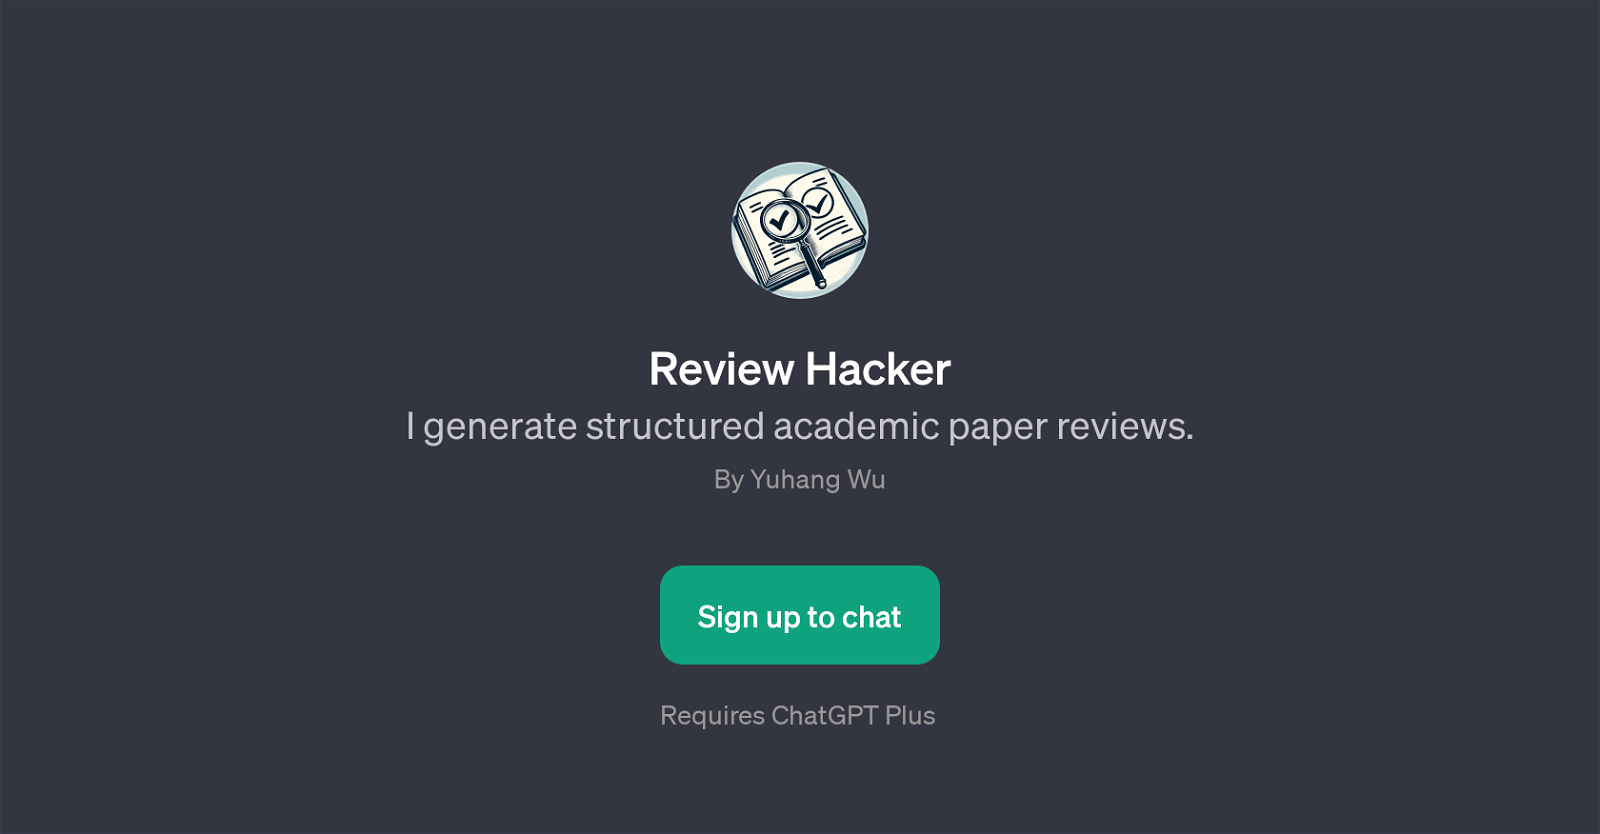 Review Hacker website